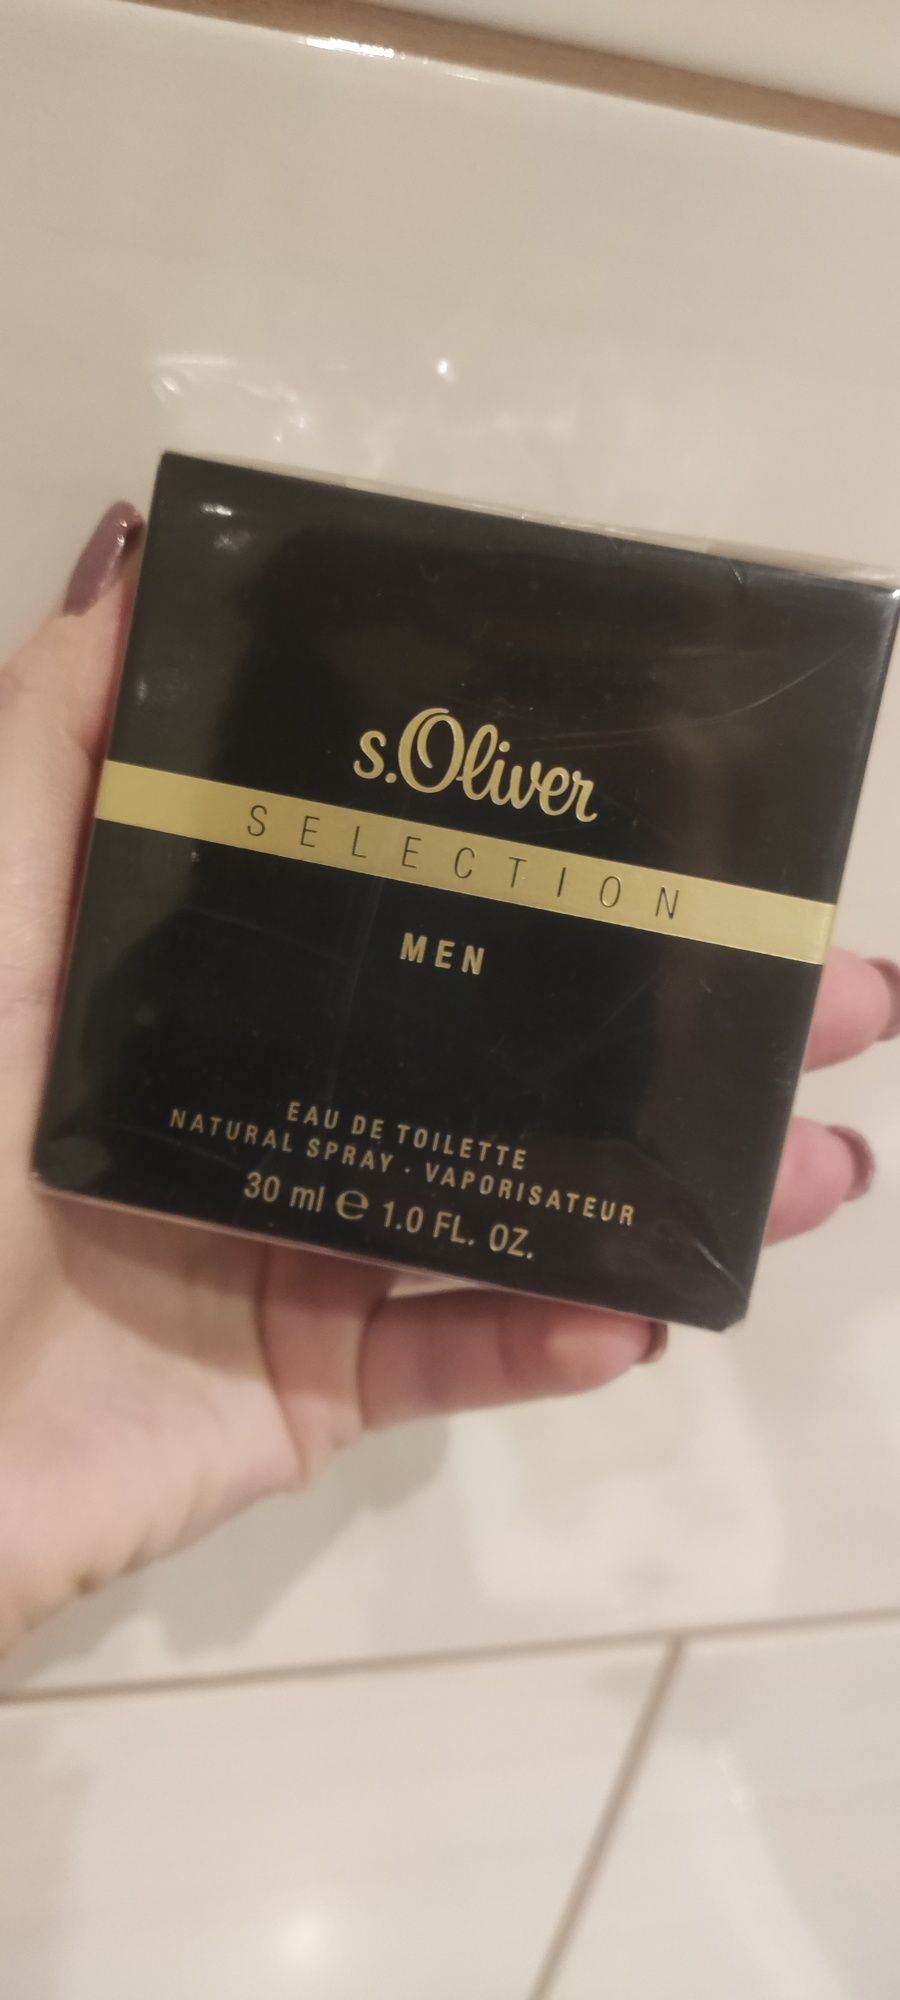 S. Oliver Selection Men woda toaletowa dla mężczyzn.